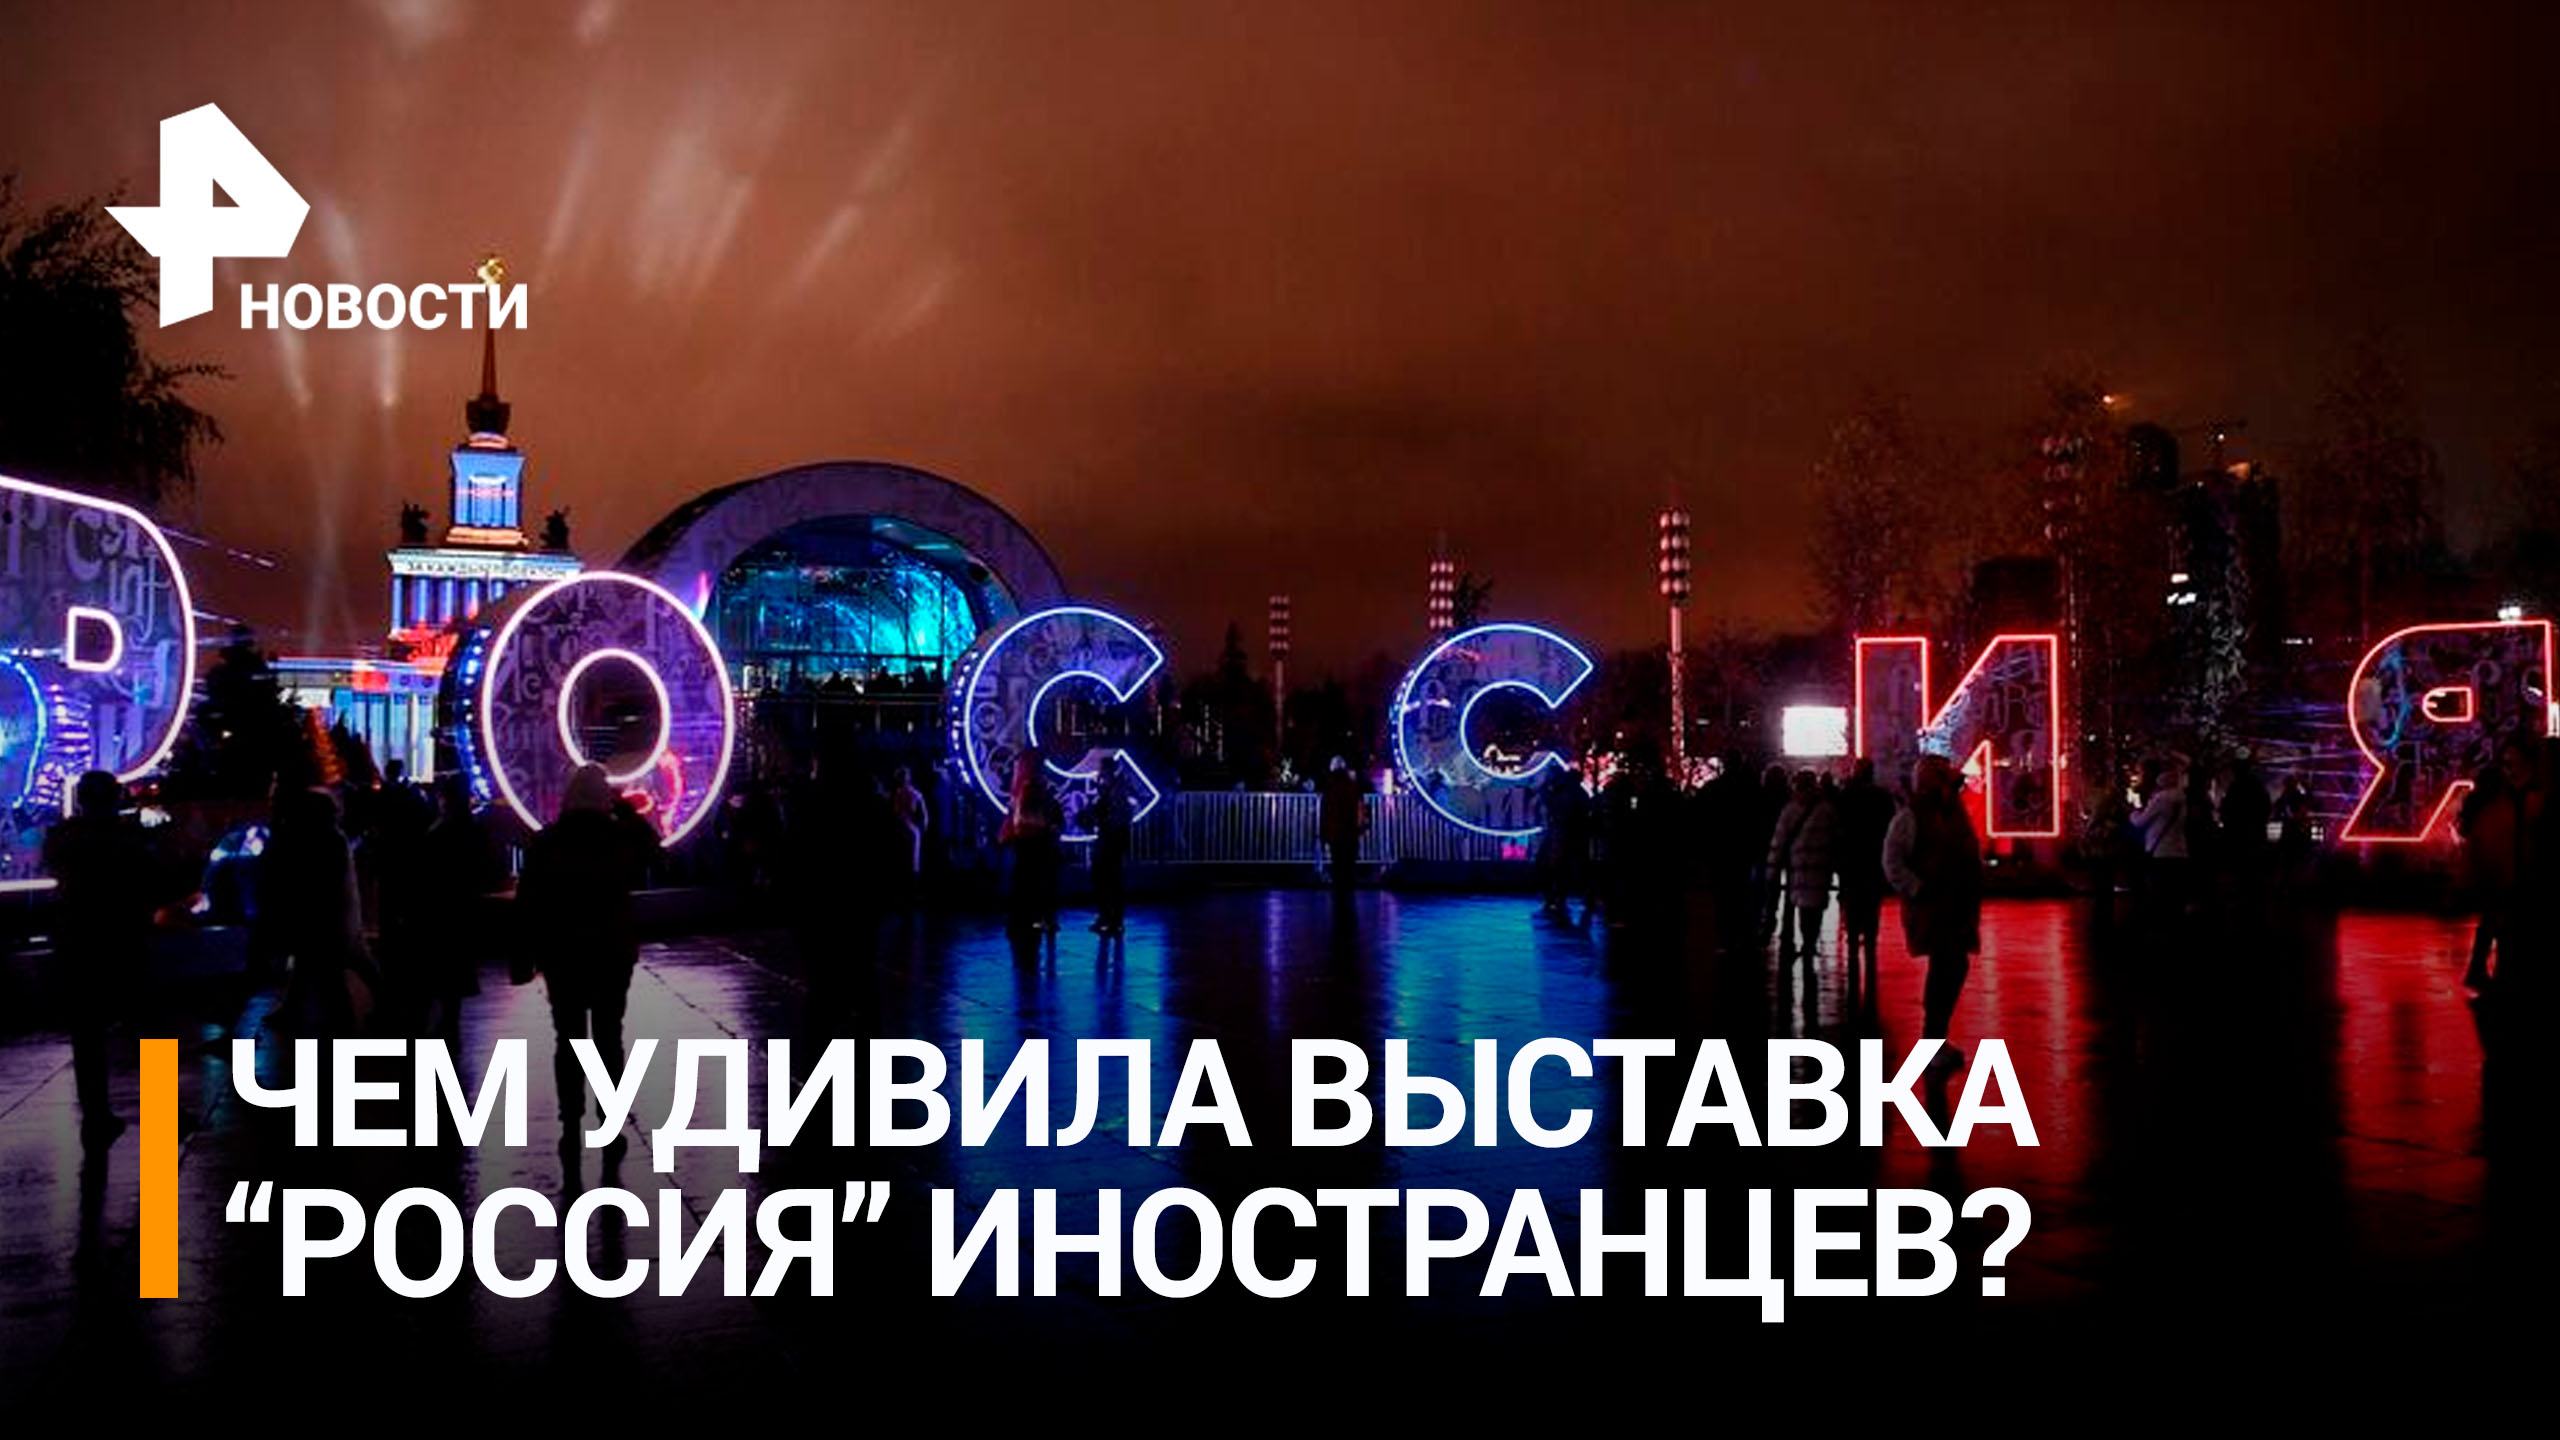 Иностранцы восхитились масштабной выставкой "Россия" на ВДНХ / РЕН Новости